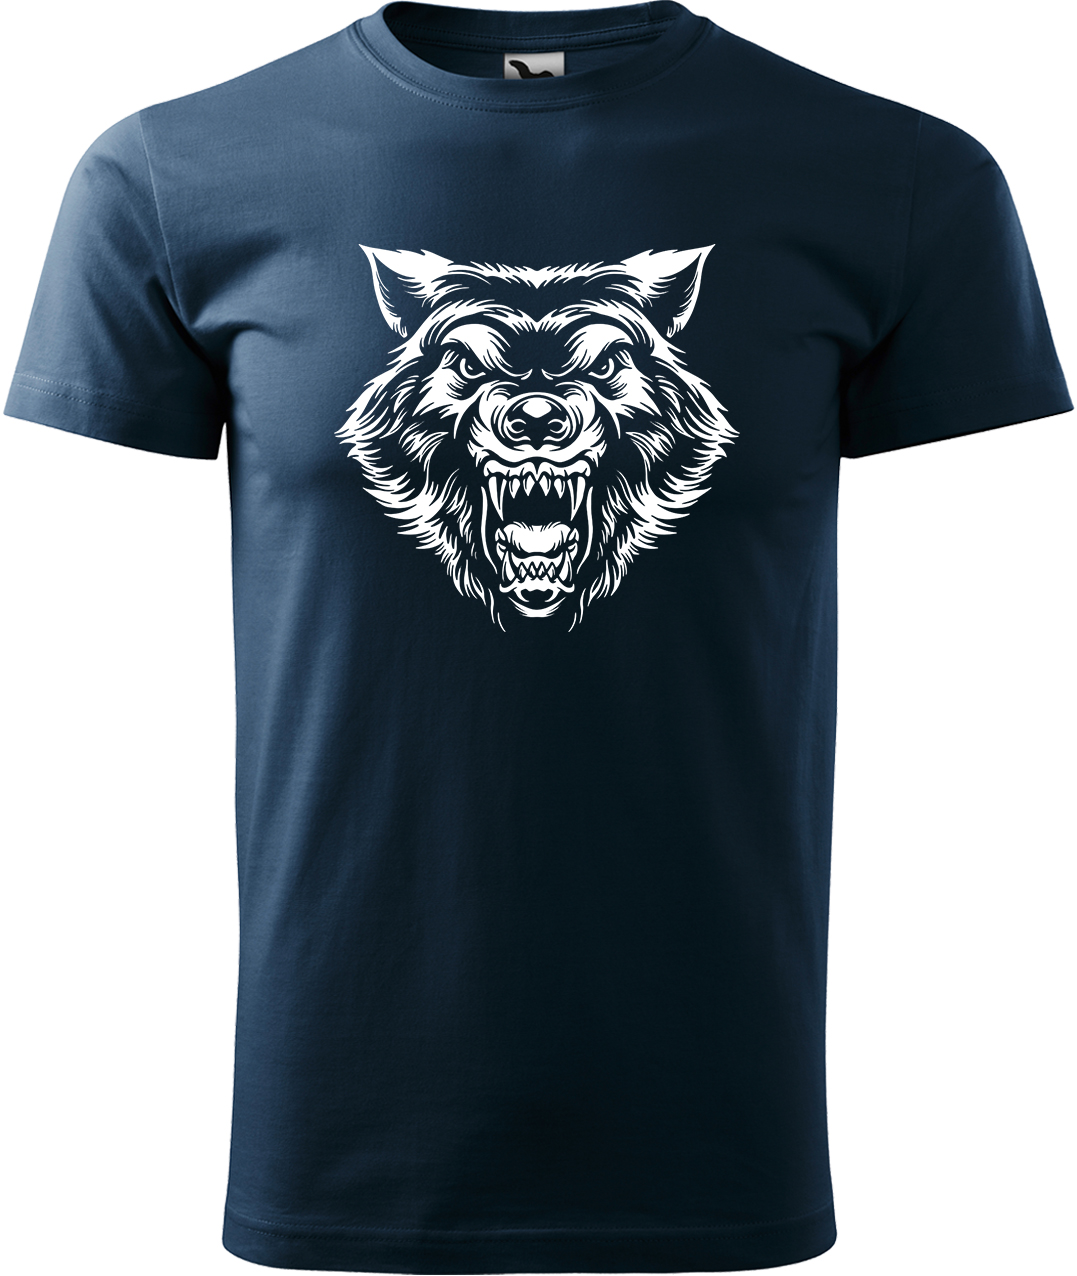 Pánské tričko s vlkem - Rozzuřený vlk Velikost: L, Barva: Námořní modrá (02), Střih: pánský